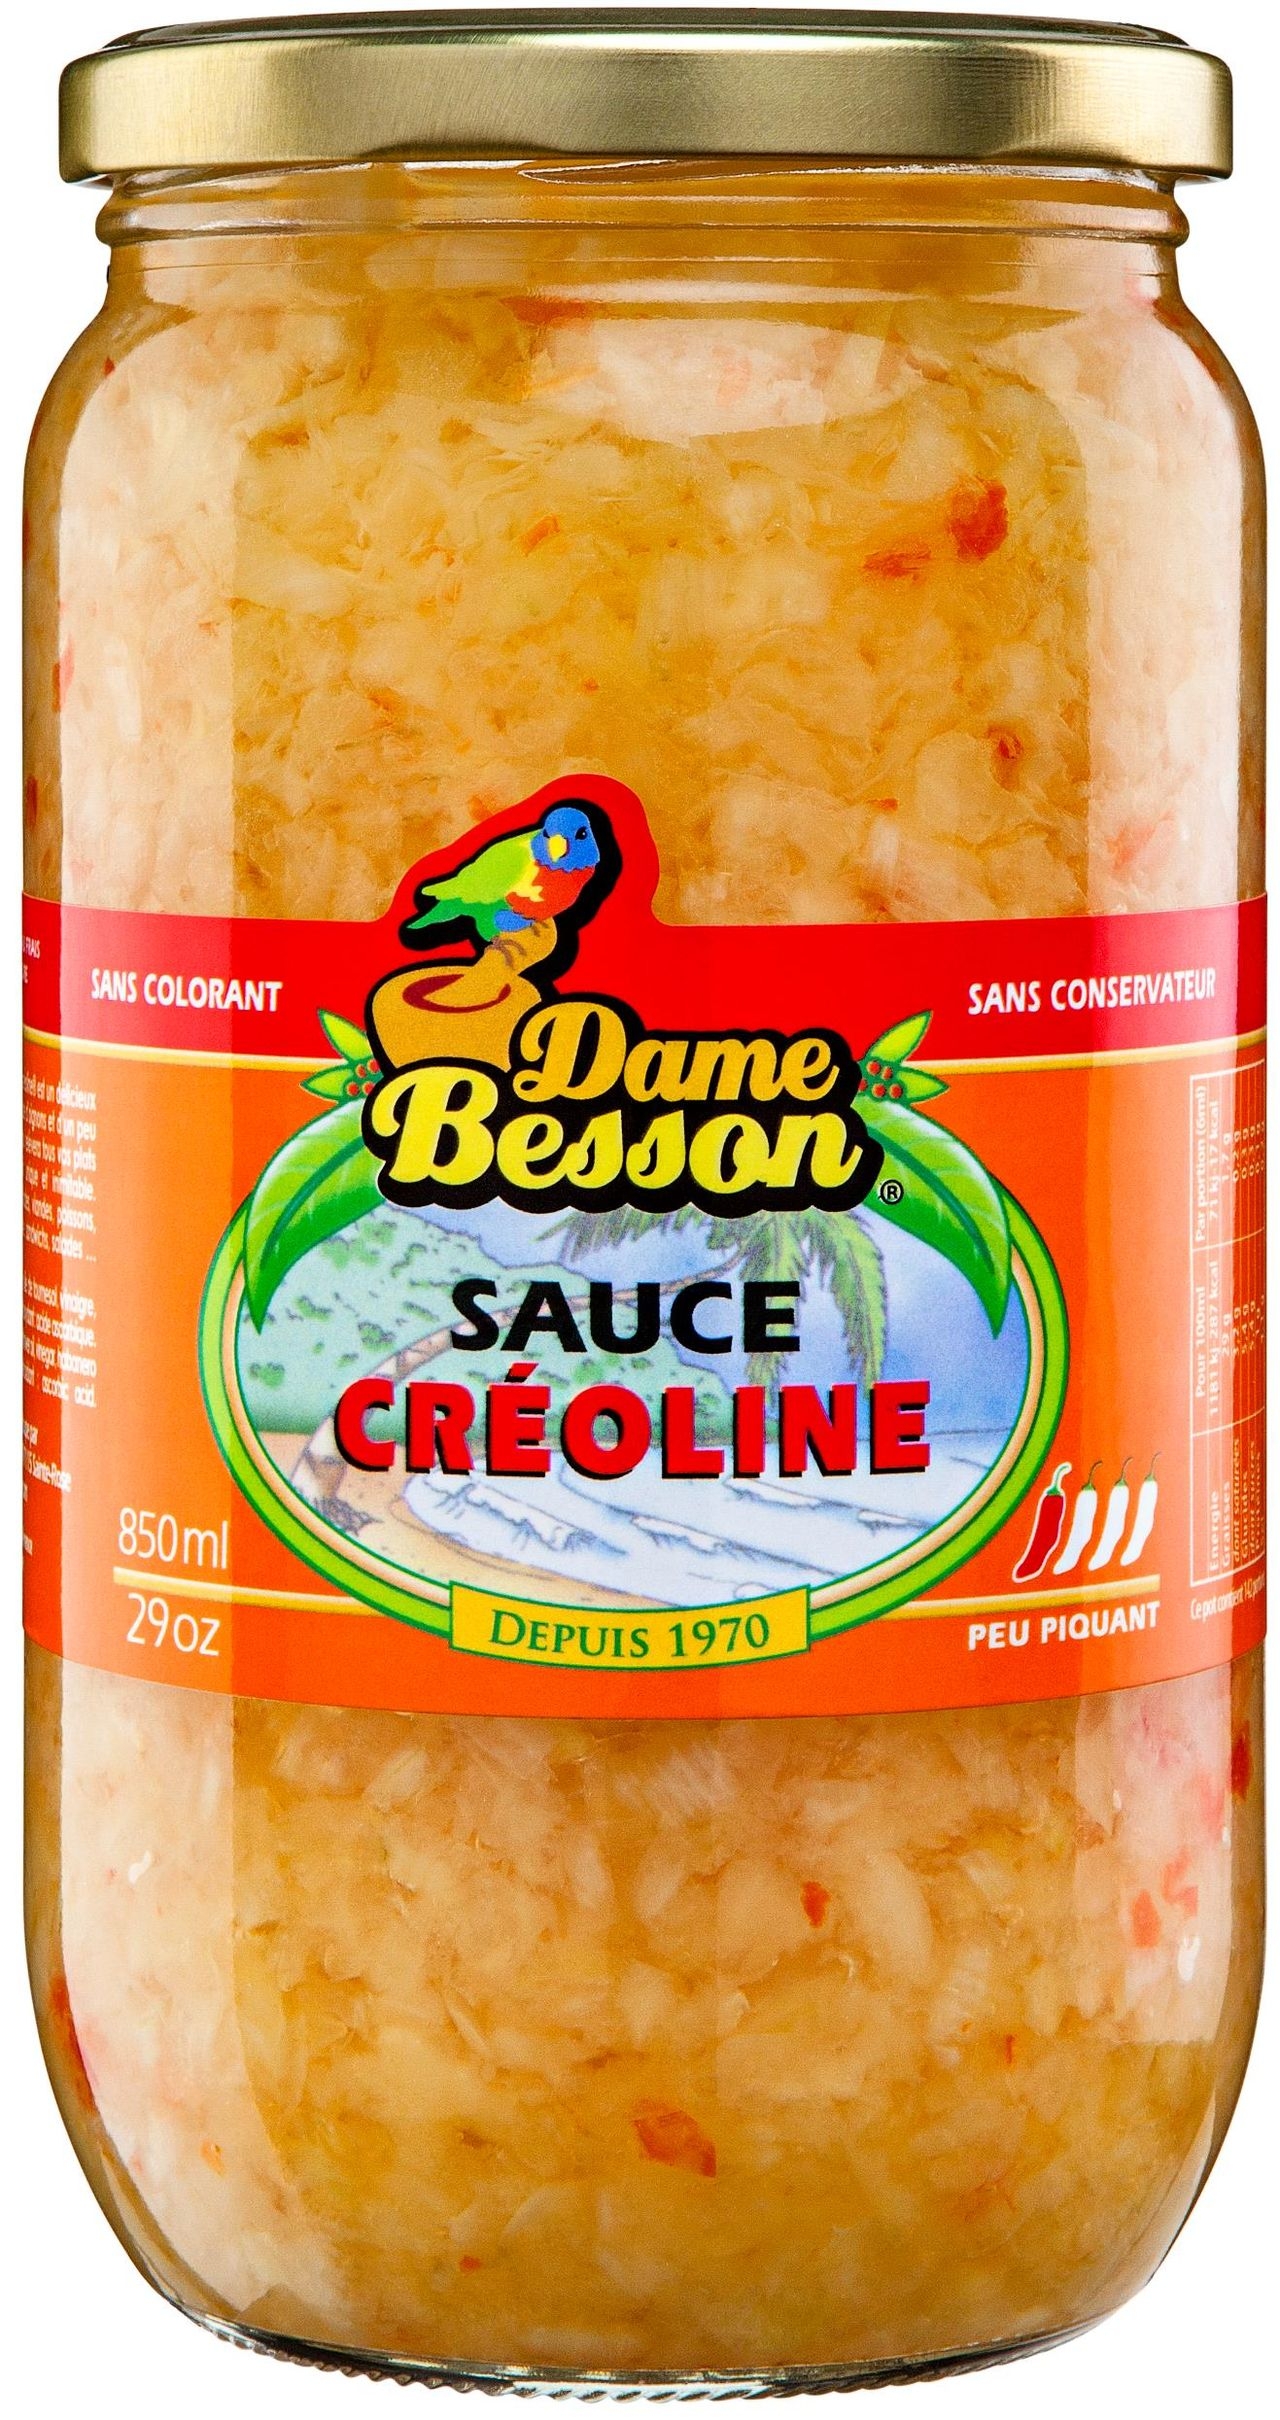 Sauce Créoline, achat en ligne